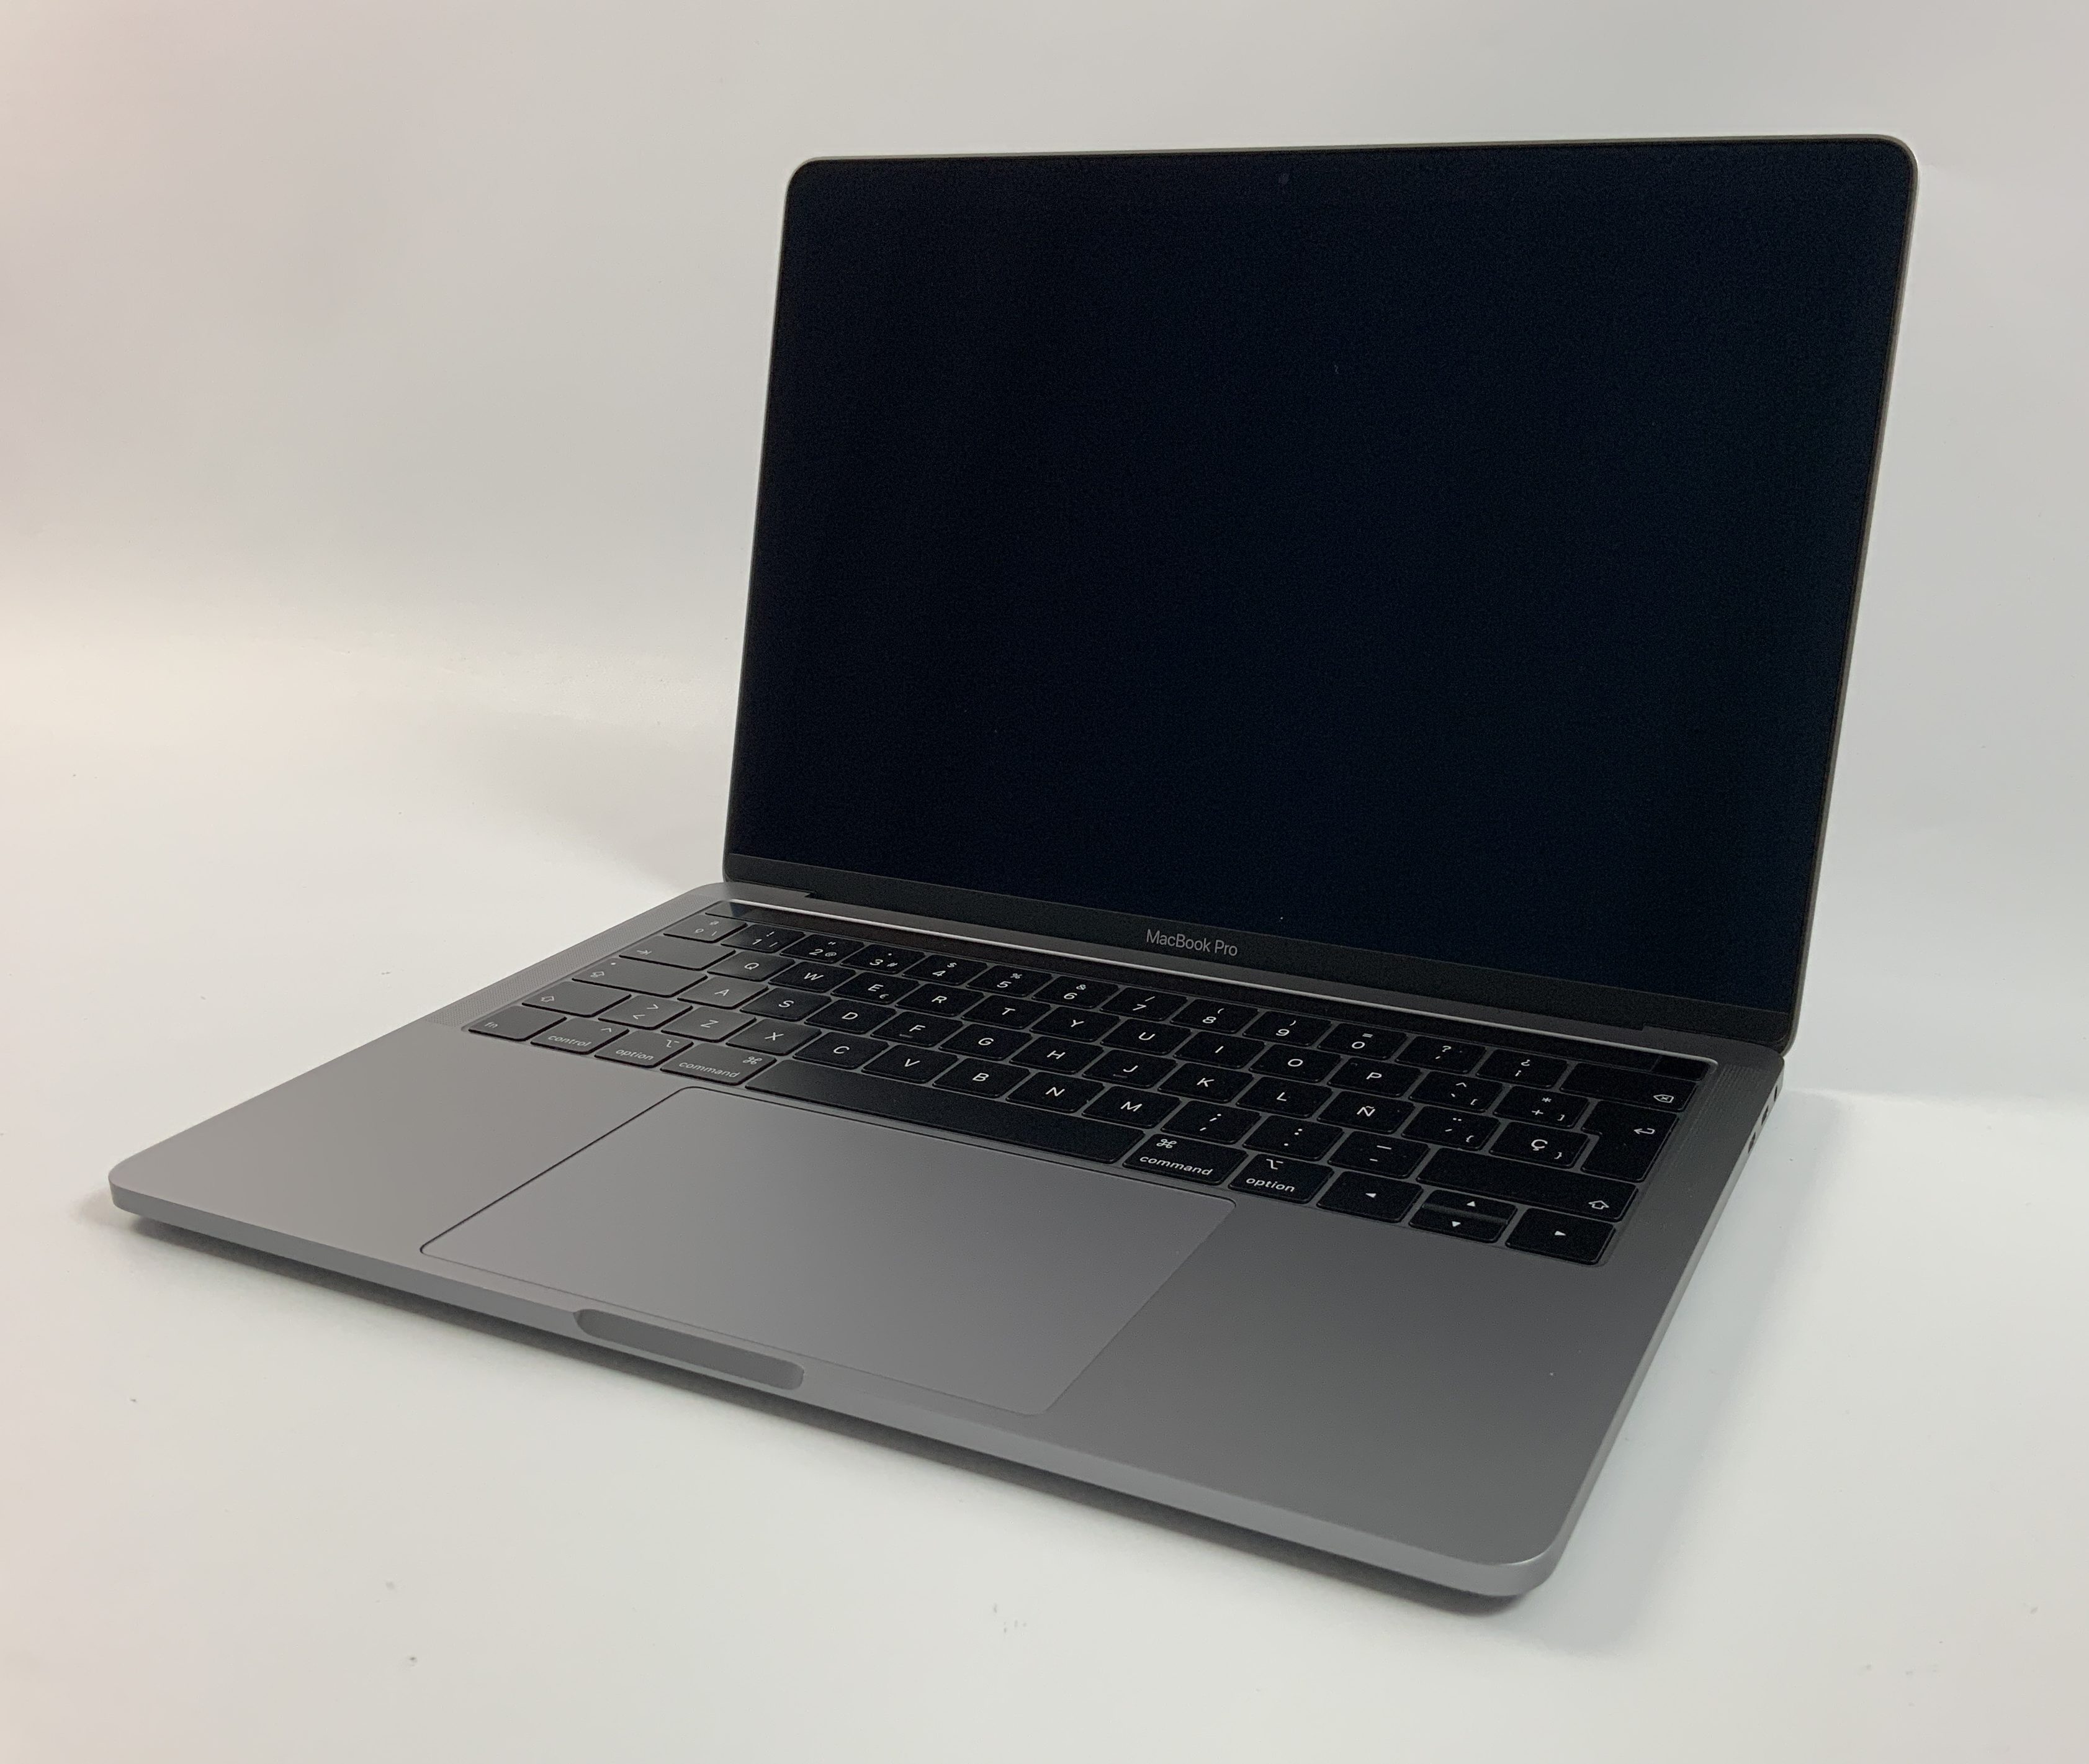 MacBook Pro 13" 4TBT Mid 2018 (Intel Quad-Core i5 2.3 GHz 8 GB RAM 512 GB SSD), Space Gray, Intel Quad-Core i5 2.3 GHz, 8 GB RAM, 512 GB SSD, immagine 1